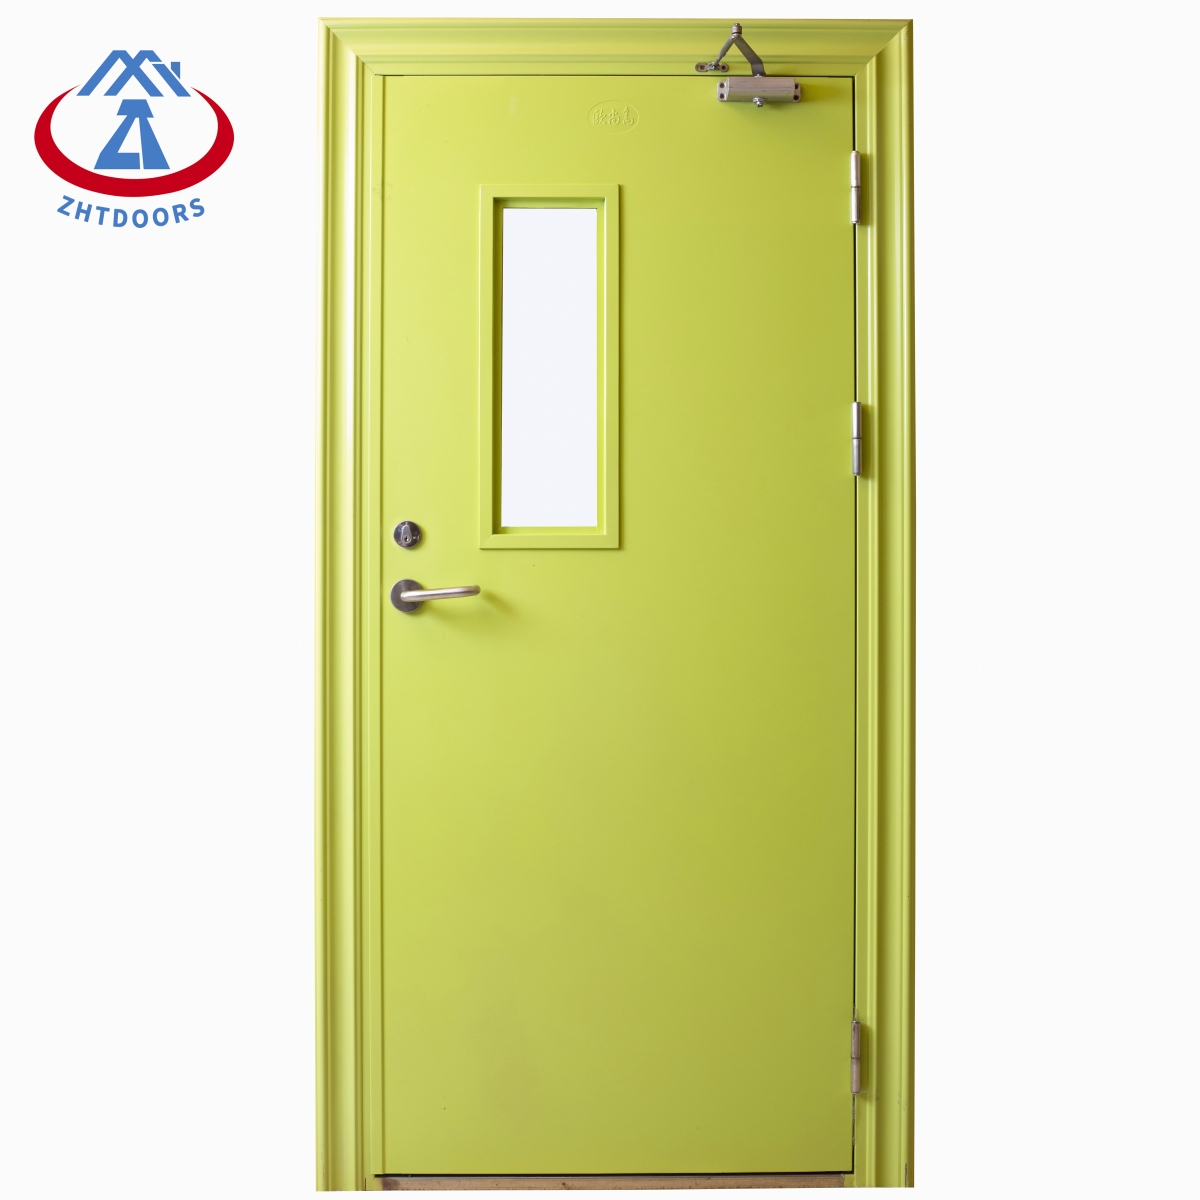 Fire Exit Door 5F-ZTFIRE Door- Fire Door,Fireproof Door,Fire rated Door,Fire Resistant Door,Steel Door,Metal Door,Exit Door